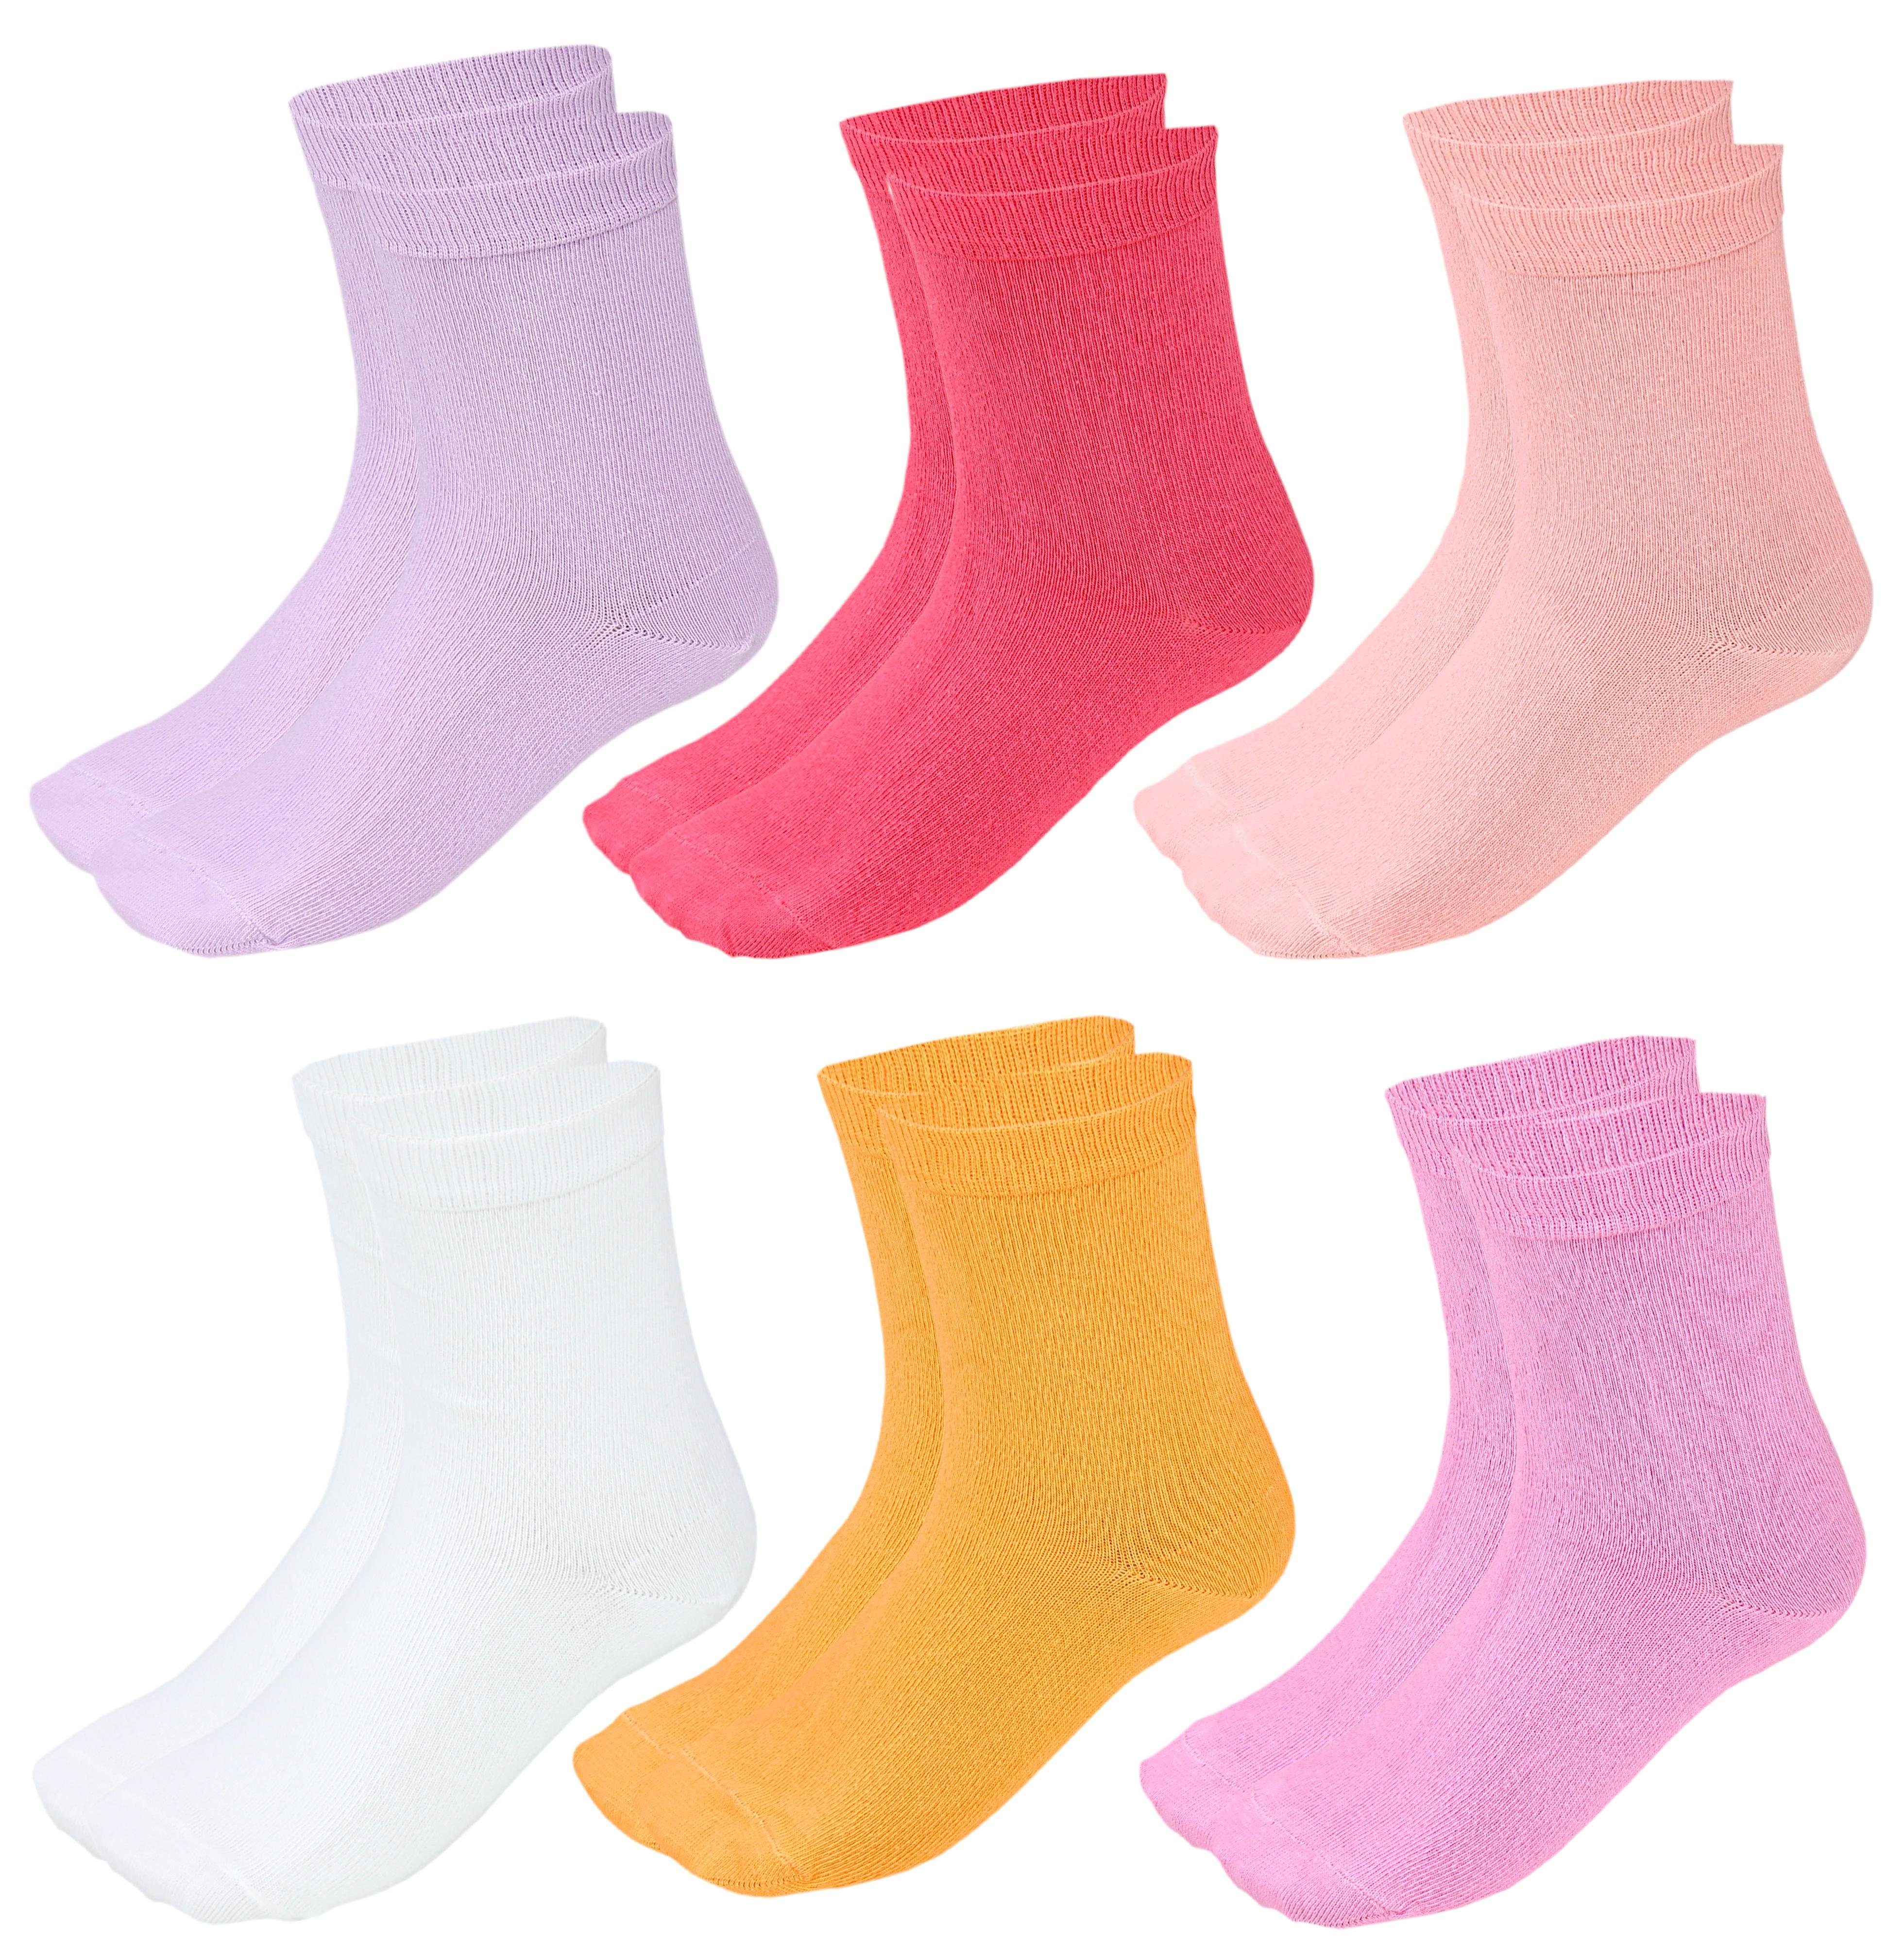 TupTam Freizeitsocken TupTam Kinder Socken Bunt Gemustert 6er Pack für Mädchen und Jungen Pink Aprikose Gelb Lila Weiß Koralle